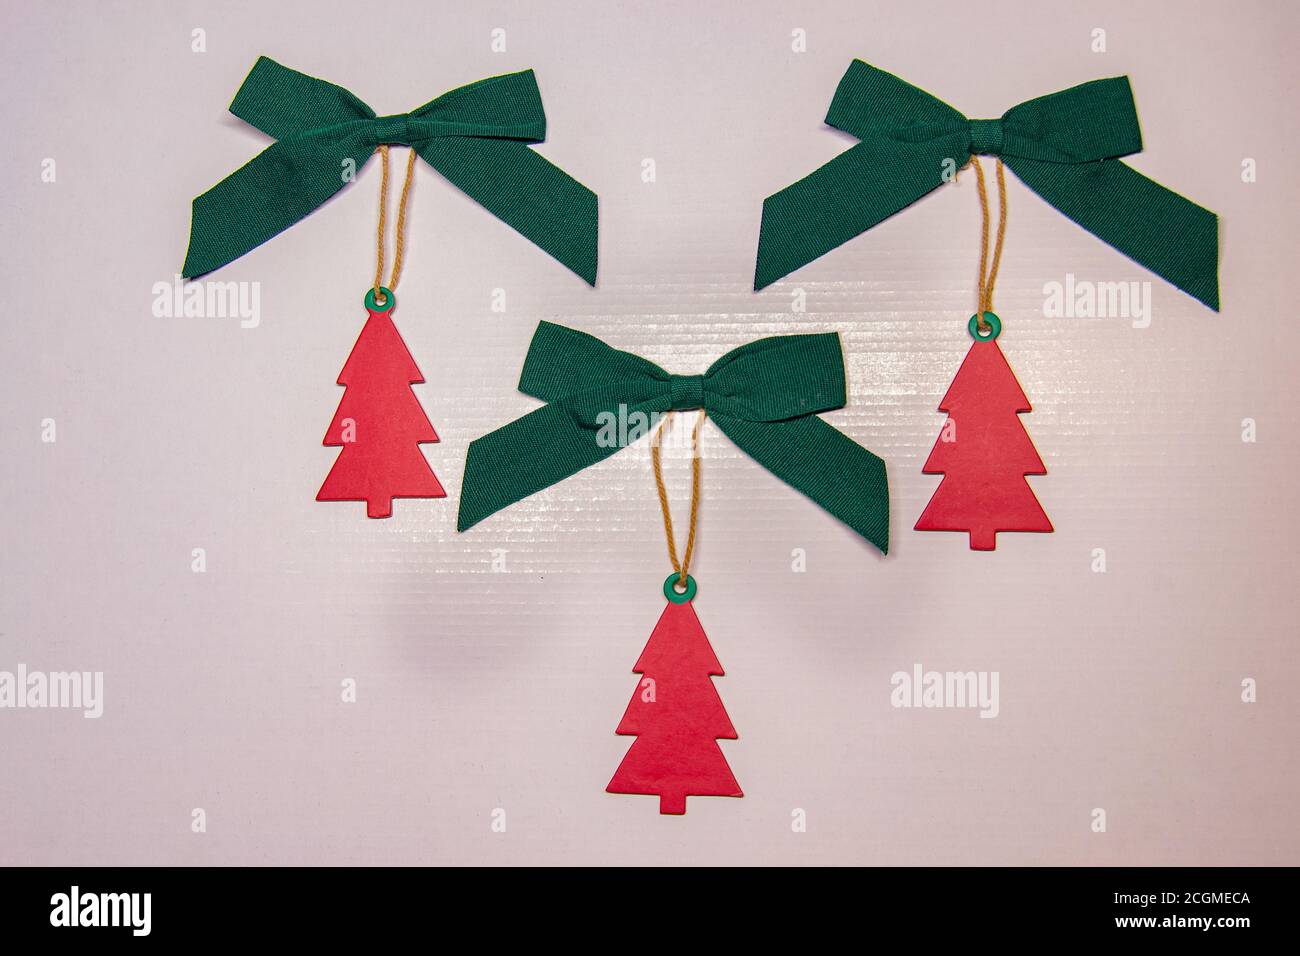 Ornament auf die Weihnachtsgeschenke in Form einer roten Weihnachtstanne mit einer grünen Schleife auf der Oberseite zu platzieren. Stockfoto